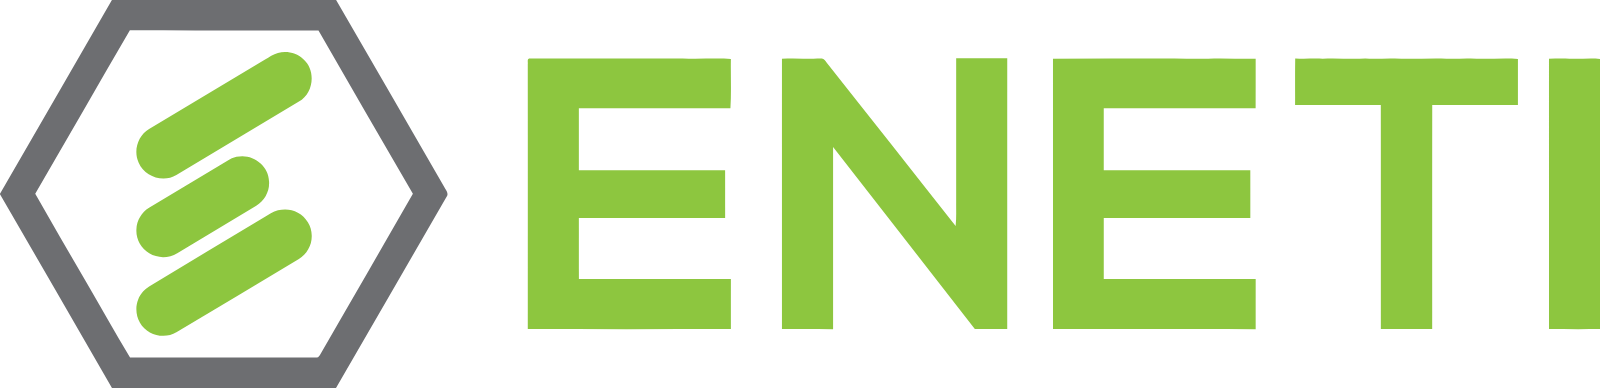 Eneti logo large (transparent PNG)